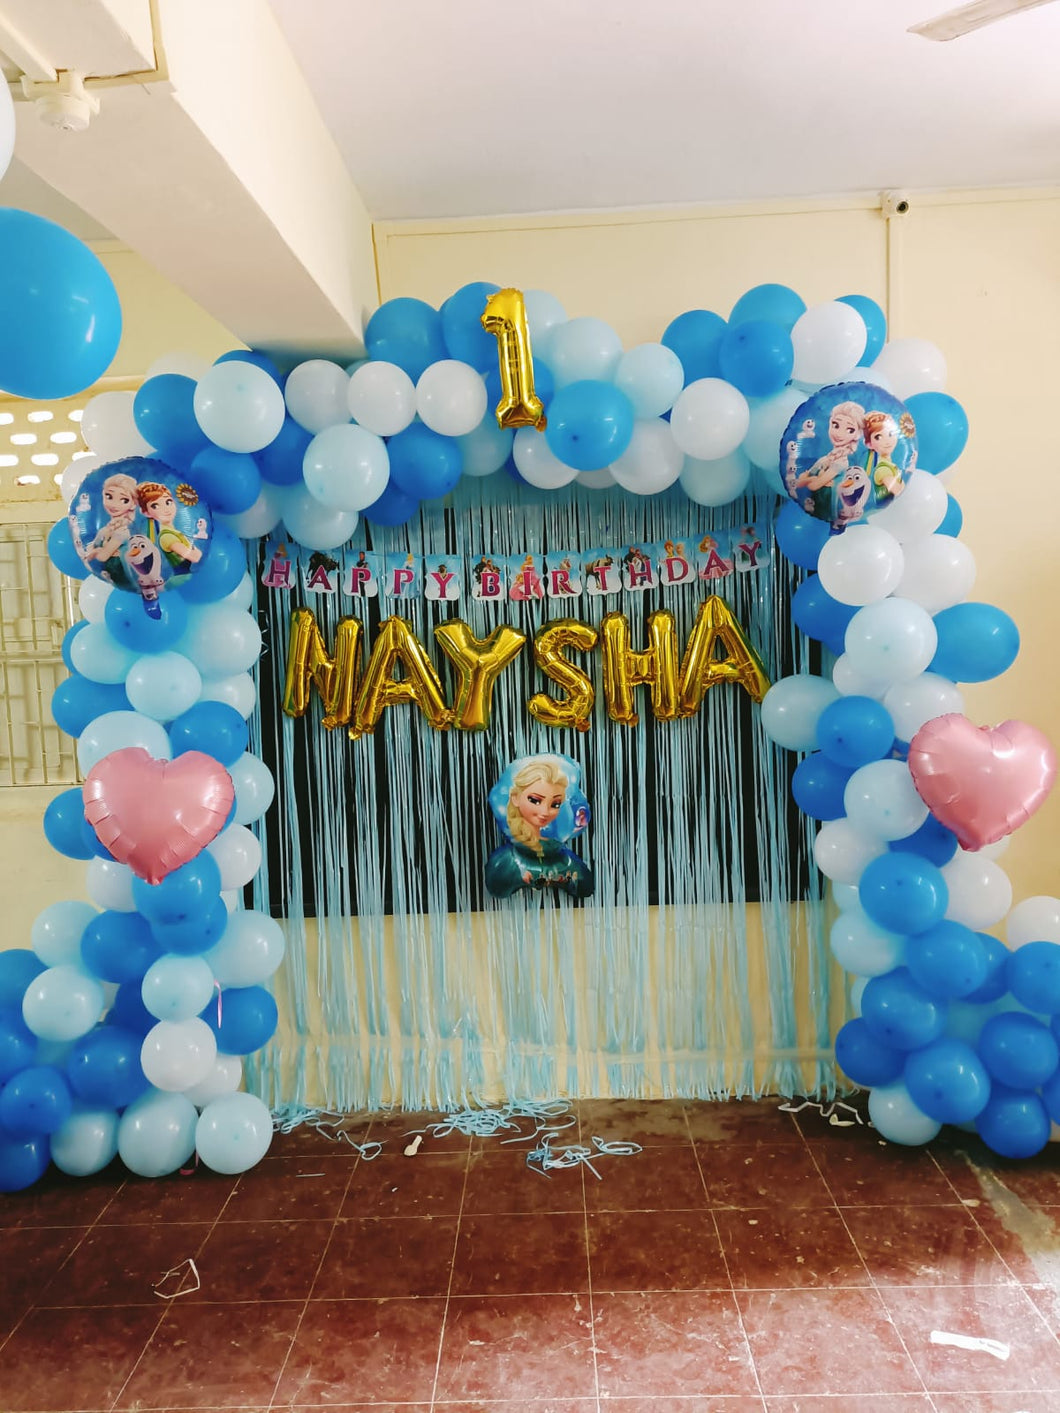 Kid's Birthday Balloon Decoration - Any Number Birthday - Customisation Options Indiaflorist247